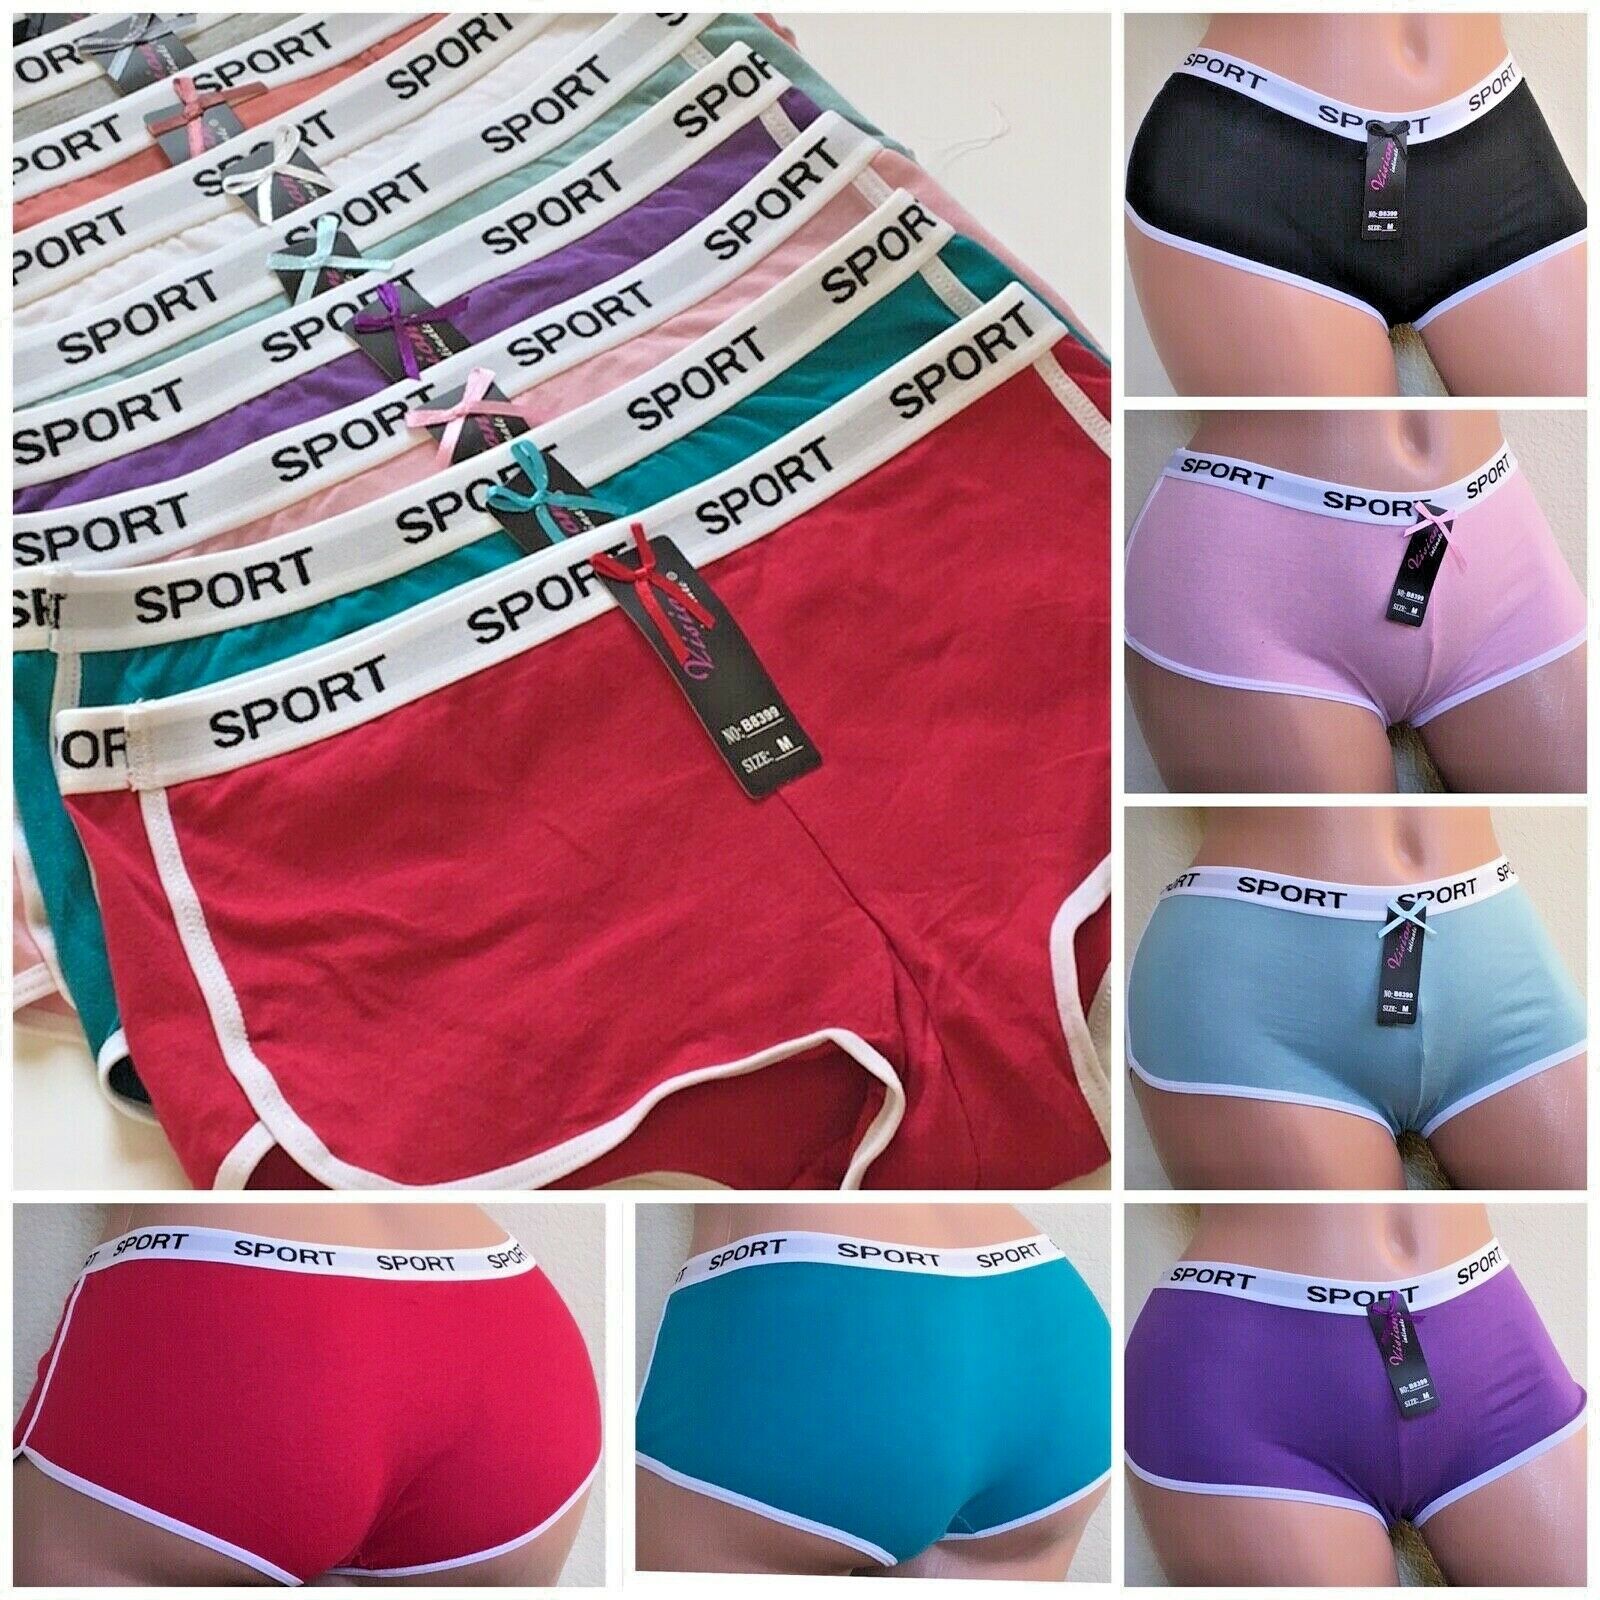 Boyshort Sports SEXY Panties 6 OR 12 Undies 95% COTTON UNDERWEAR SHORTIE 02  S-XL